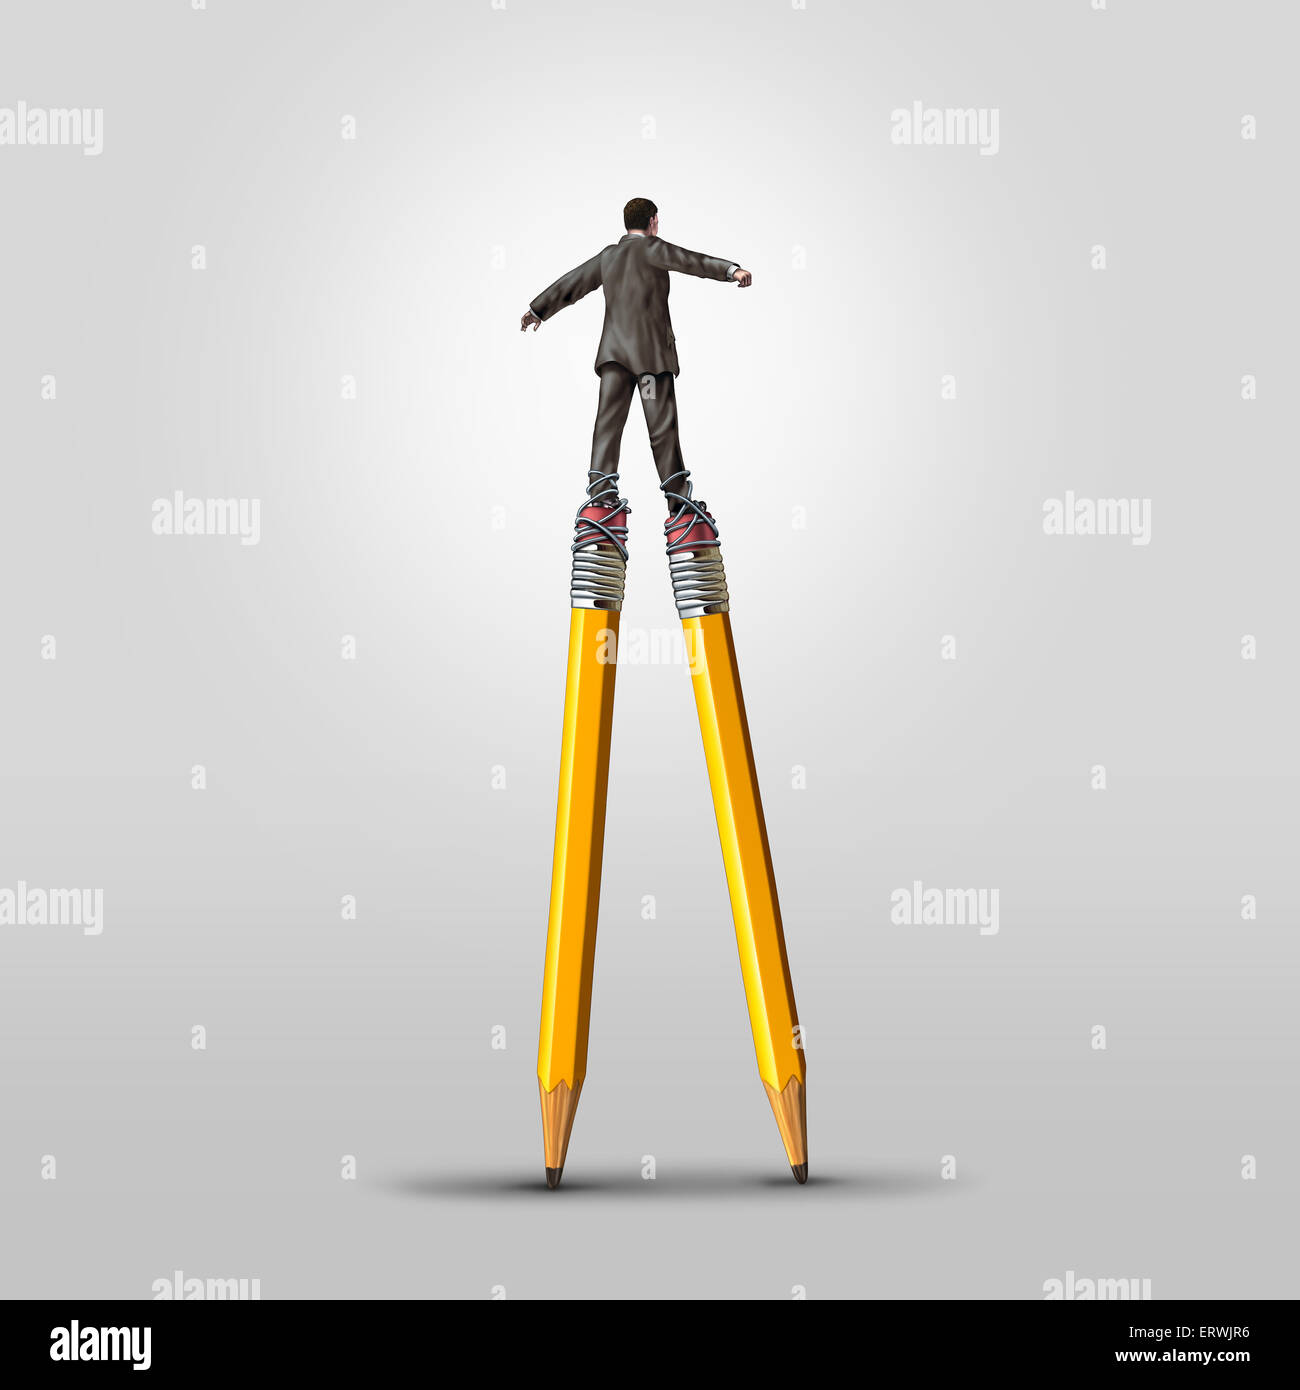 Compétence créative concept comme un habile homme d'affaires en équilibre sur des échasses crayon attaché à ses jambes comme une métaphore pour le leadership dans l'imagination et des idées de solutions innovatrices. Banque D'Images